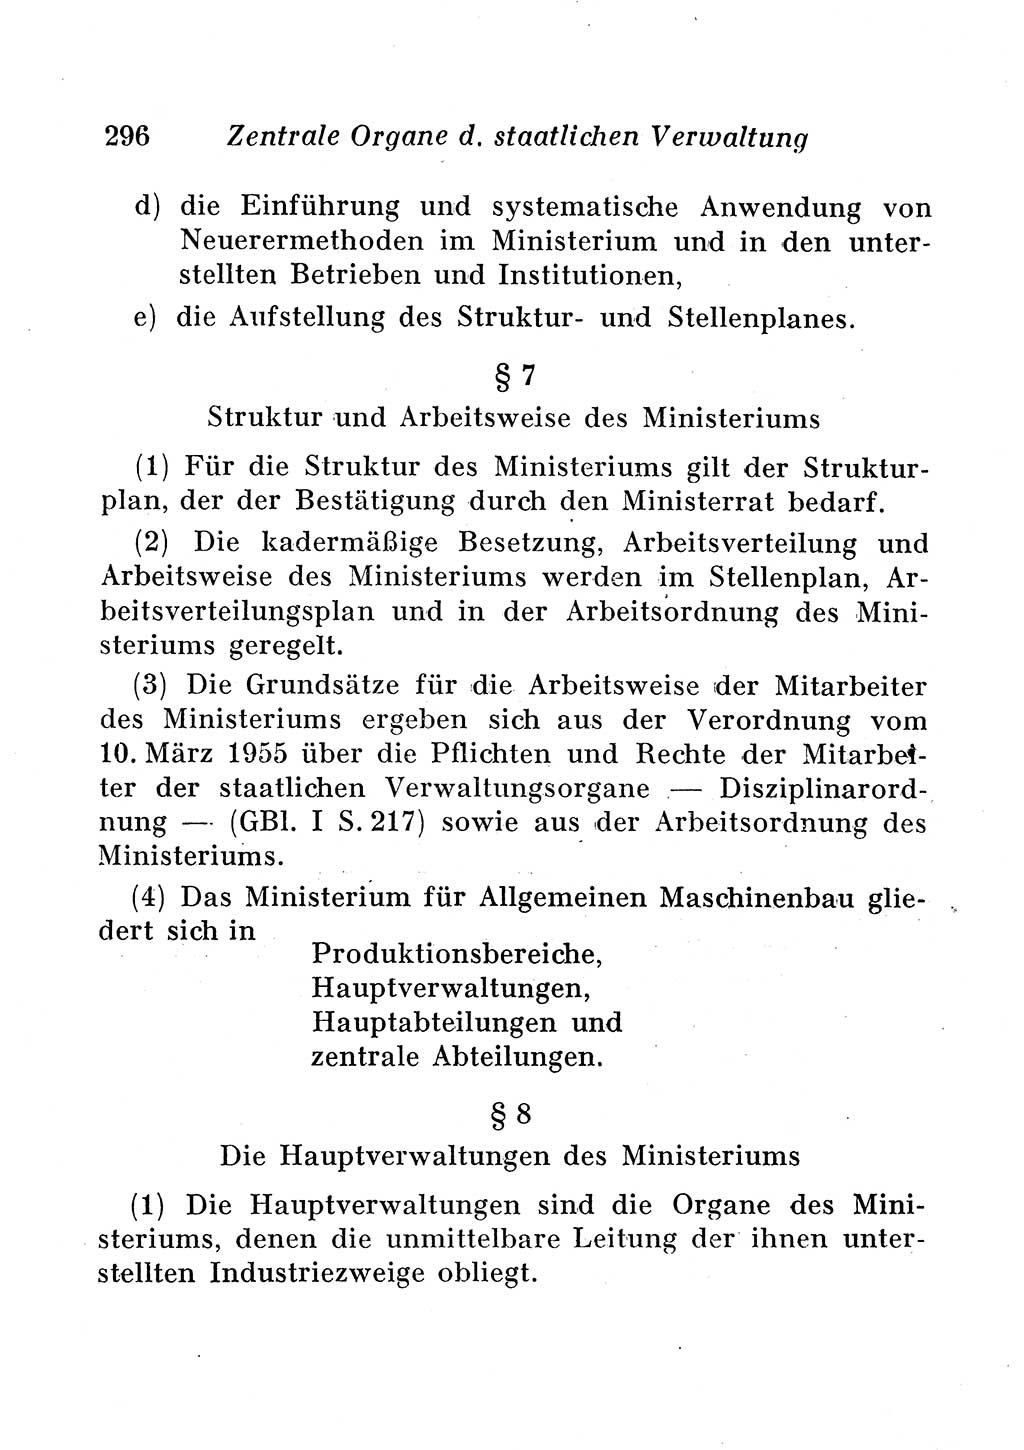 Staats- und verwaltungsrechtliche Gesetze der Deutschen Demokratischen Republik (DDR) 1958, Seite 296 (StVerwR Ges. DDR 1958, S. 296)